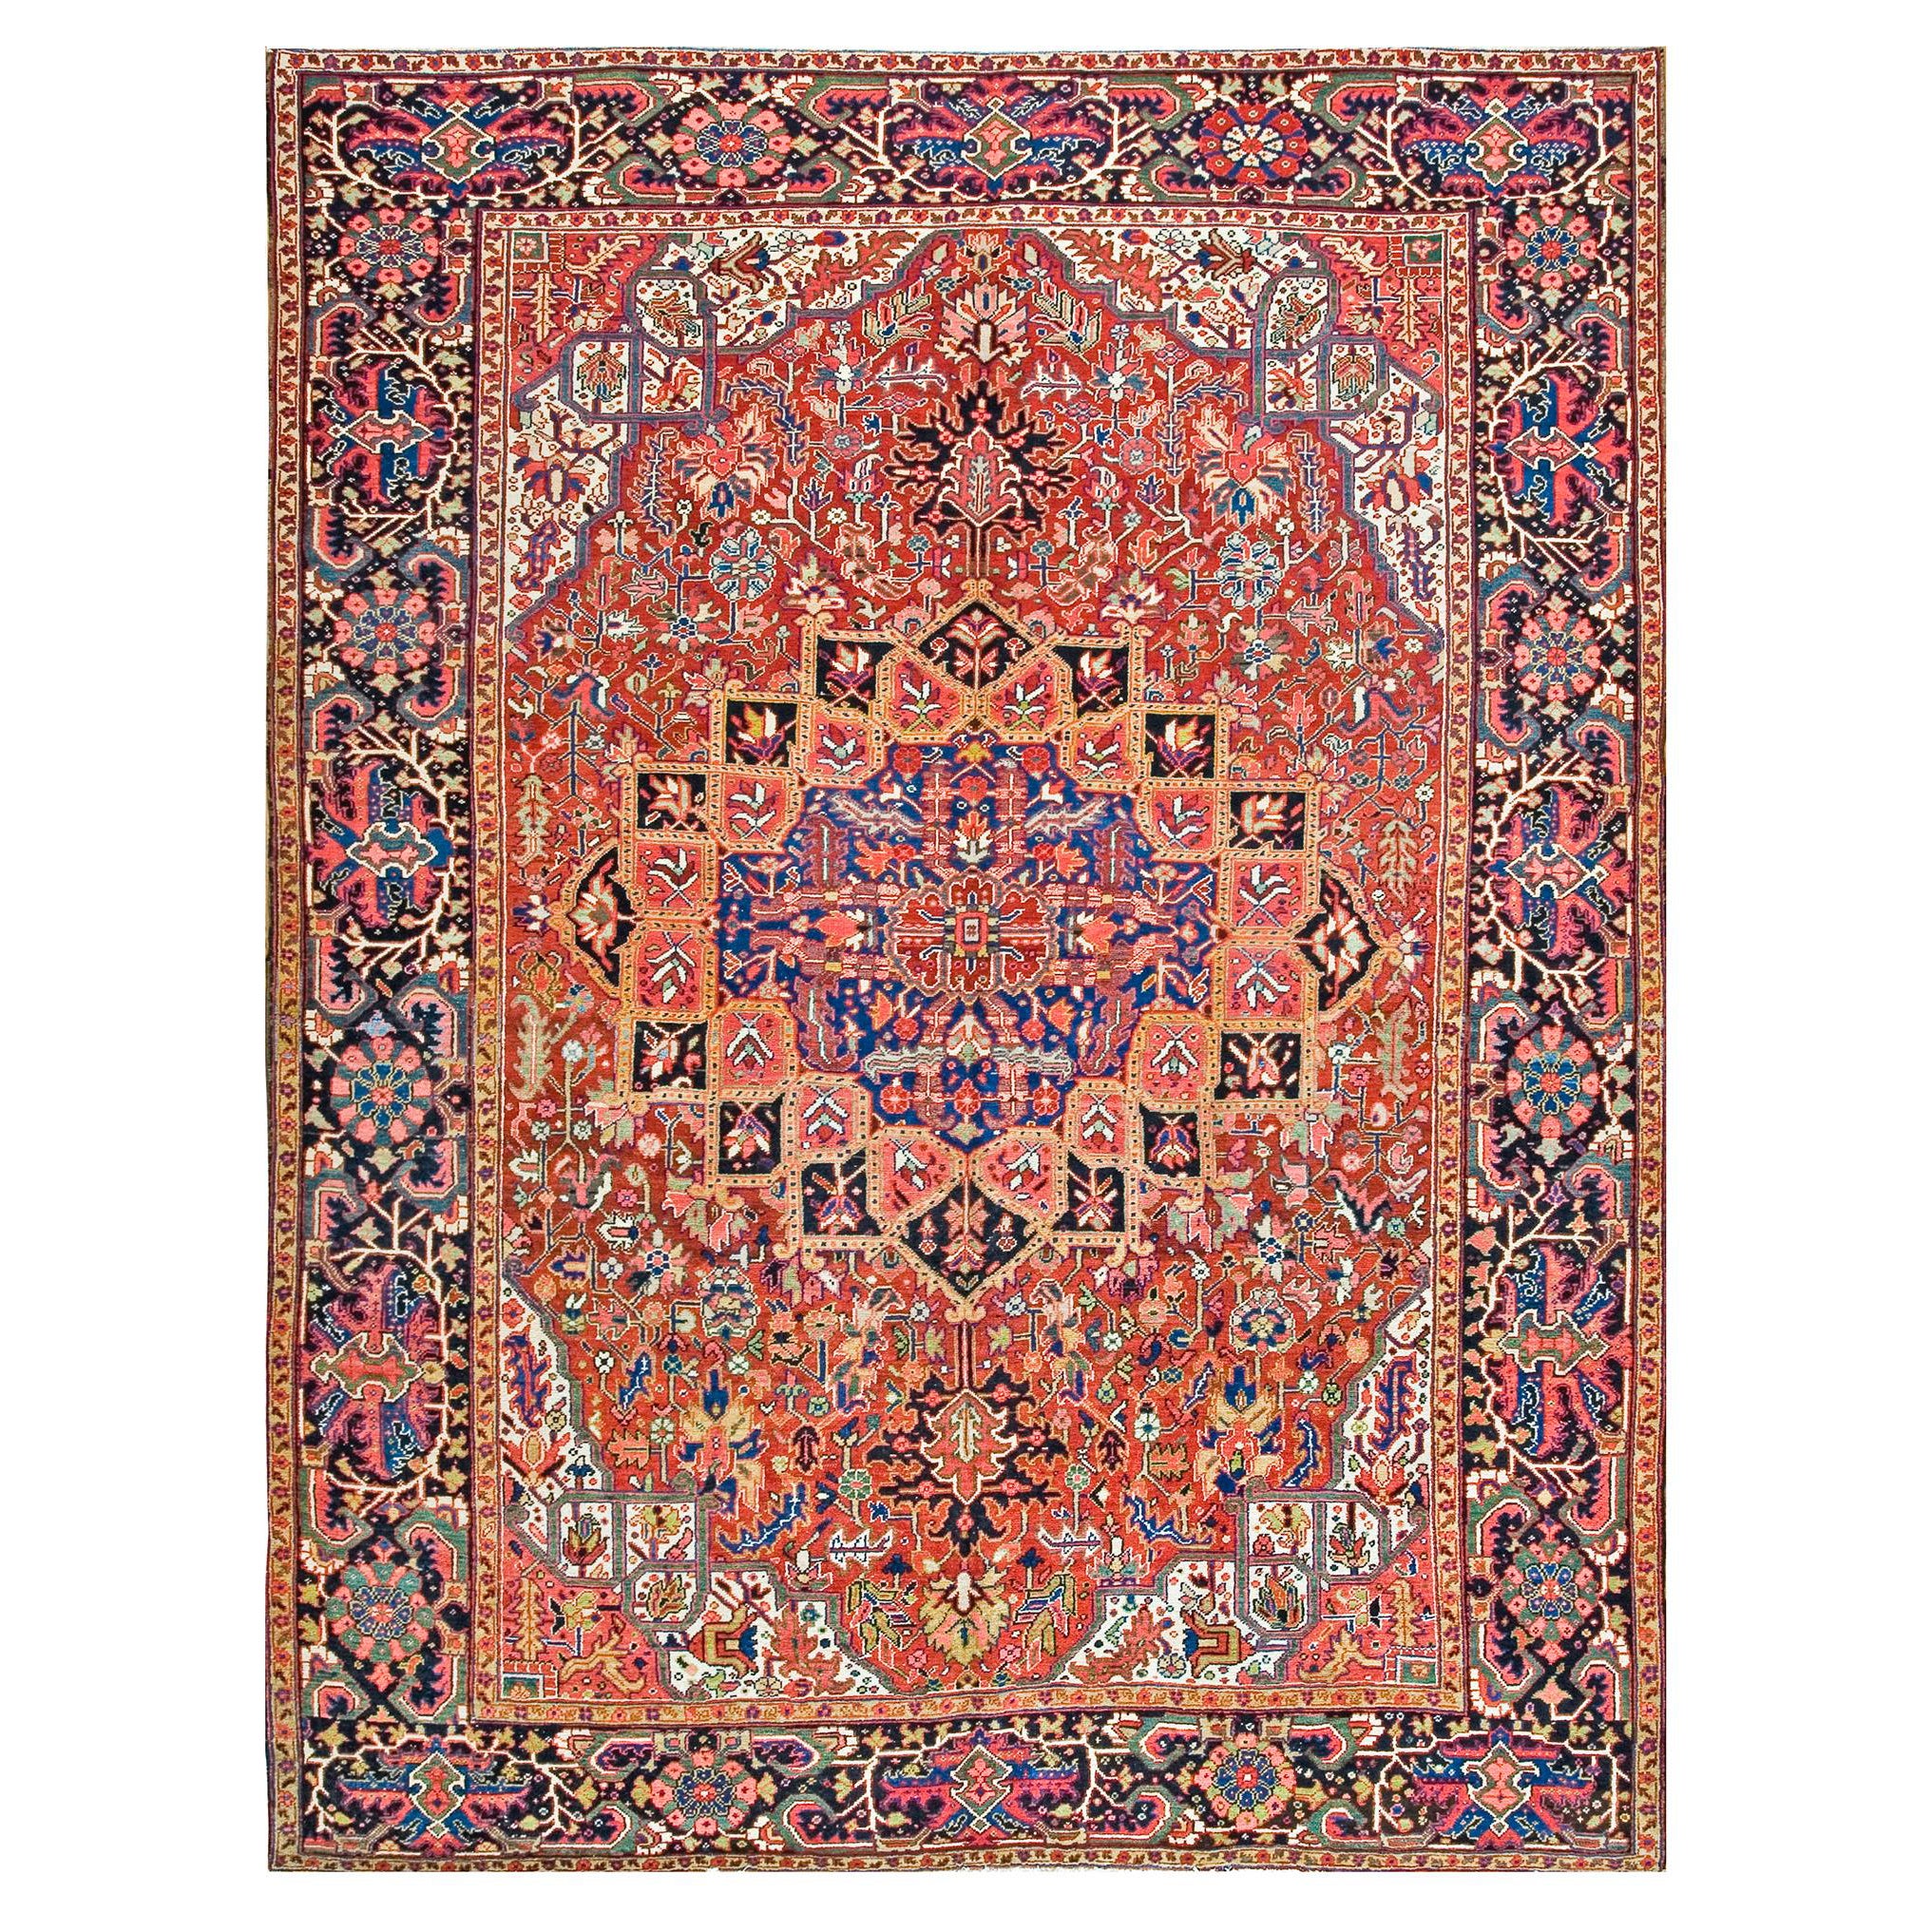 1920s Persian Heriz Carpet ( 9' x 11' 11" - 275 x 363 cm )